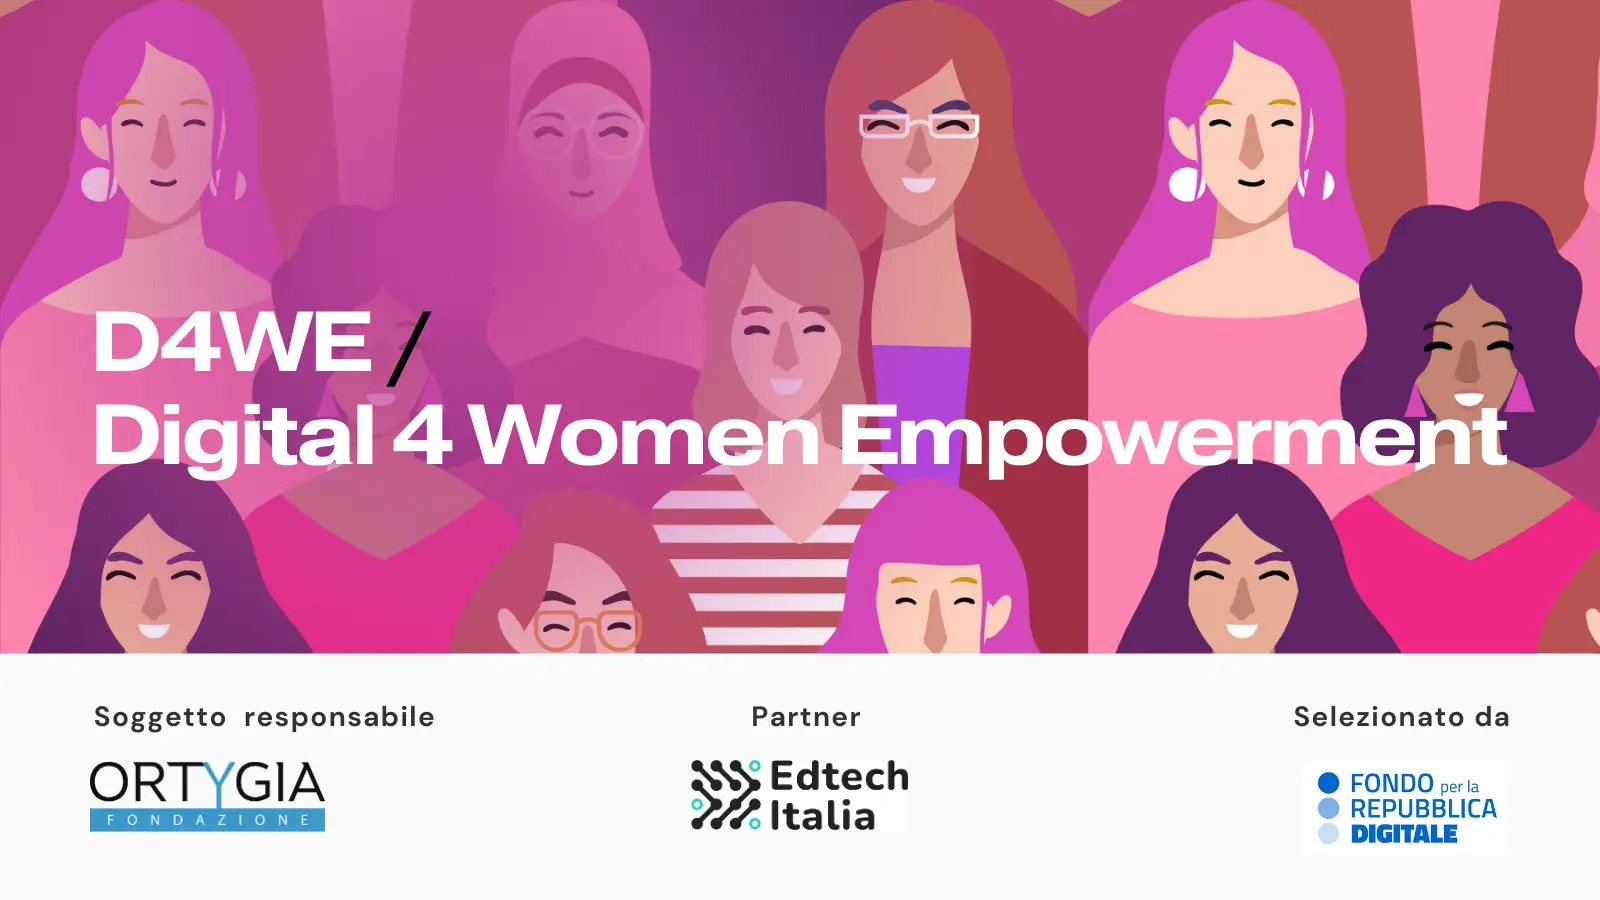 Digital 4 Women Empowerment